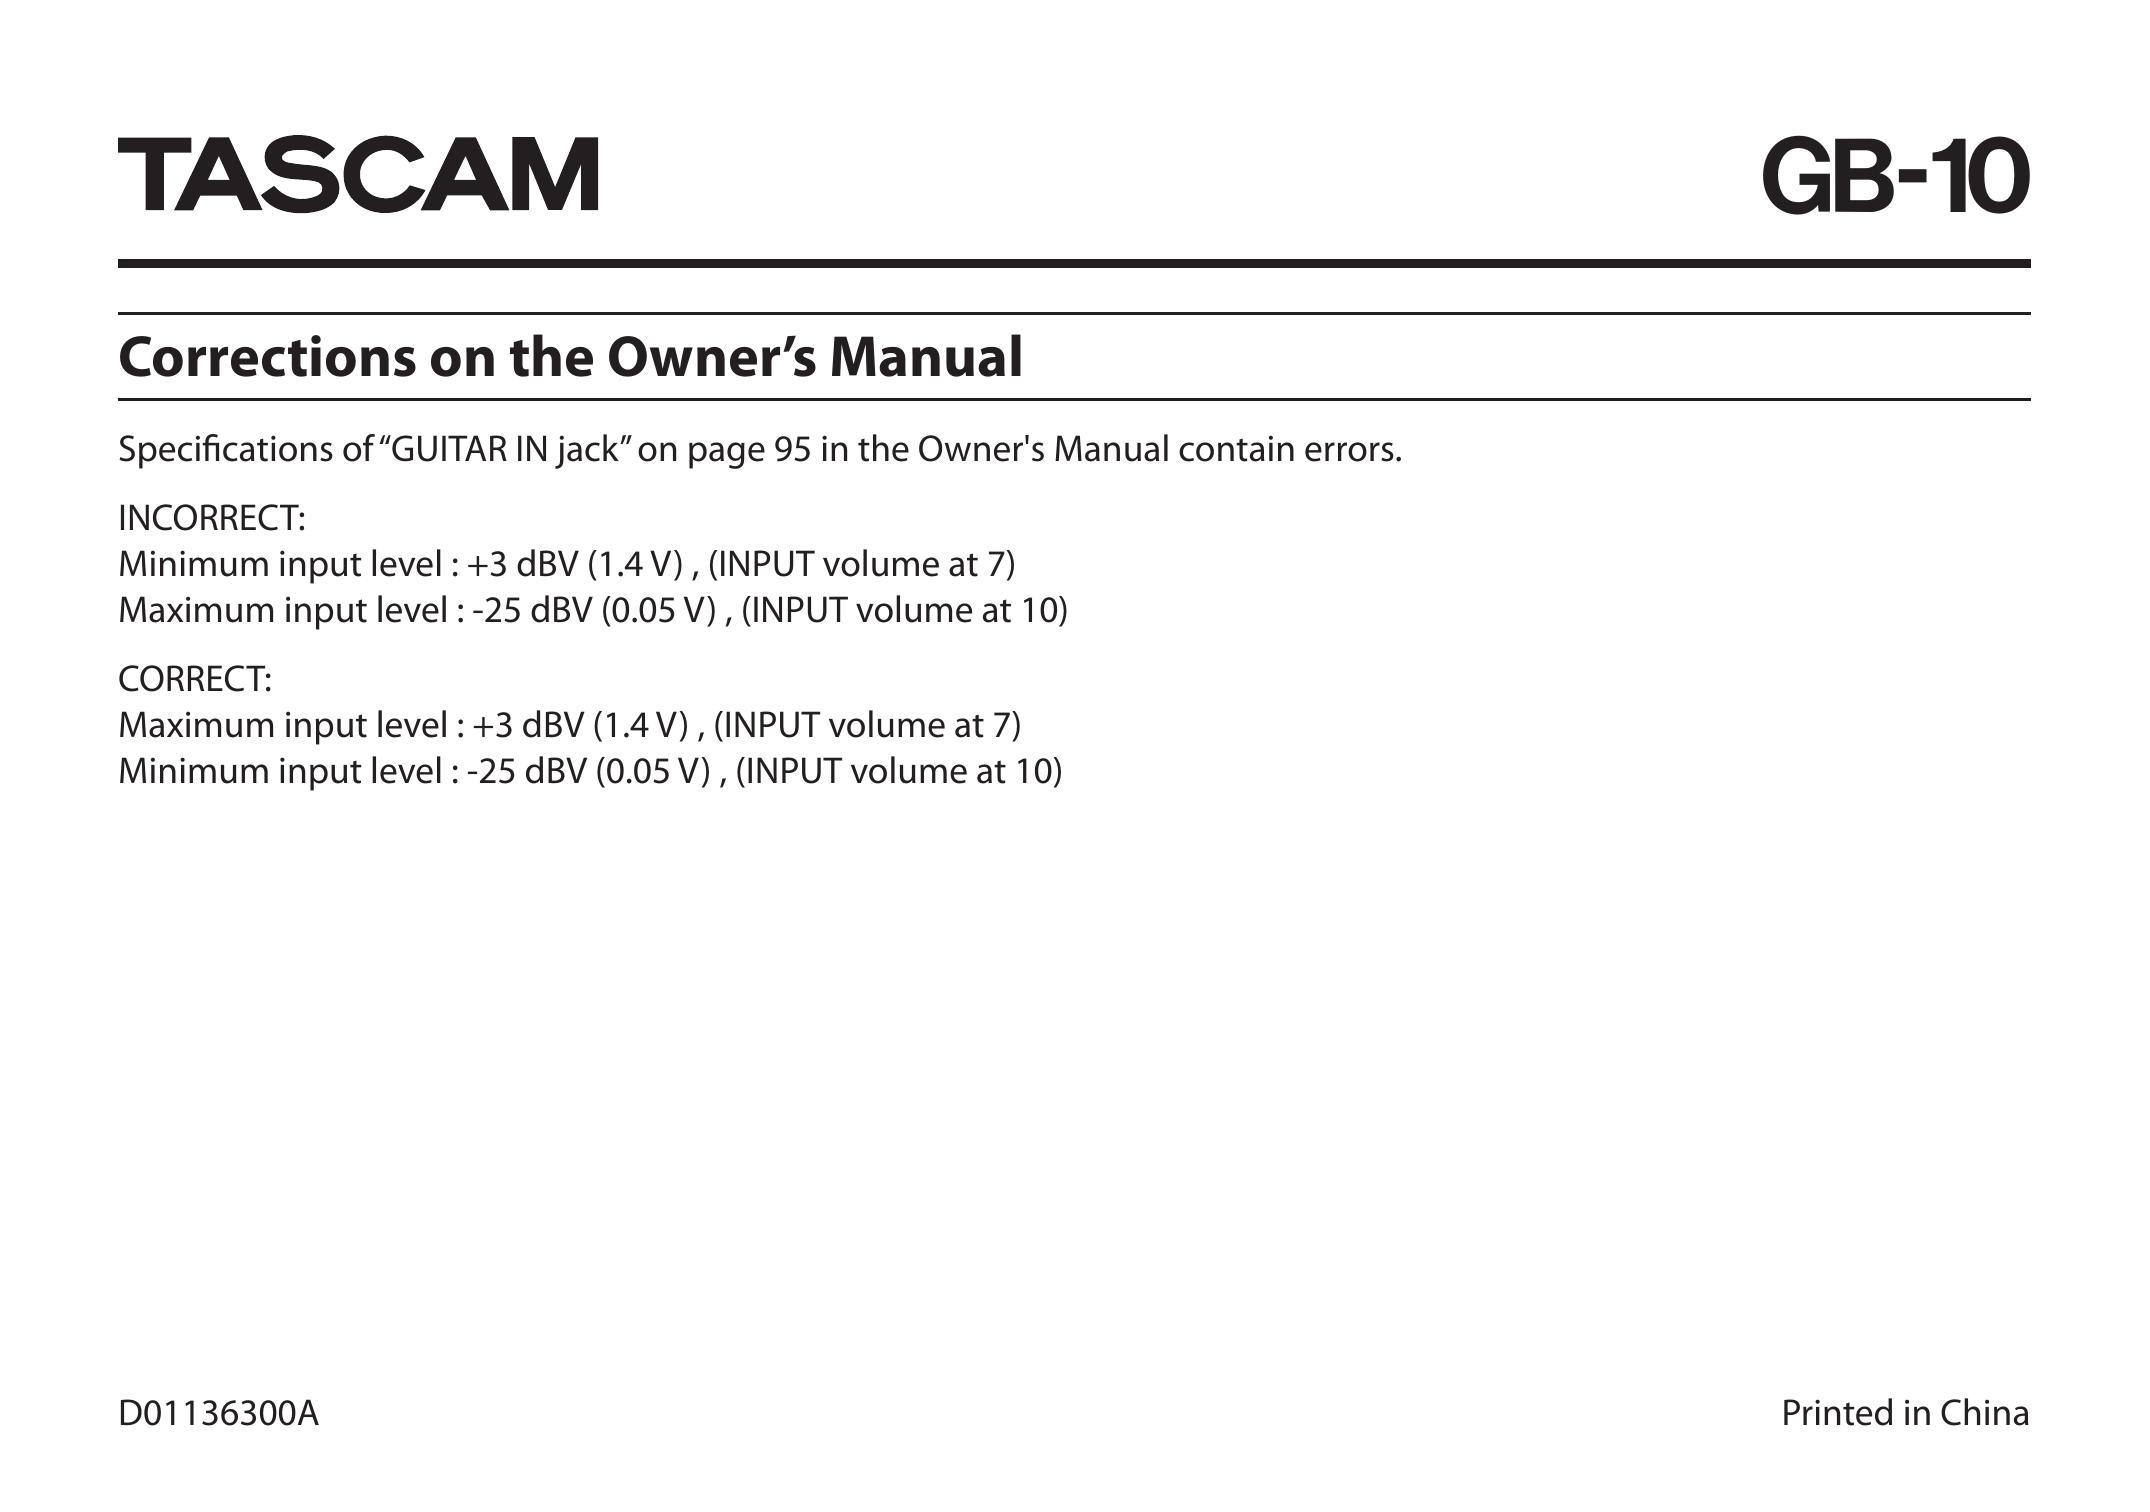 Tascam GB-10 Guitar User Manual